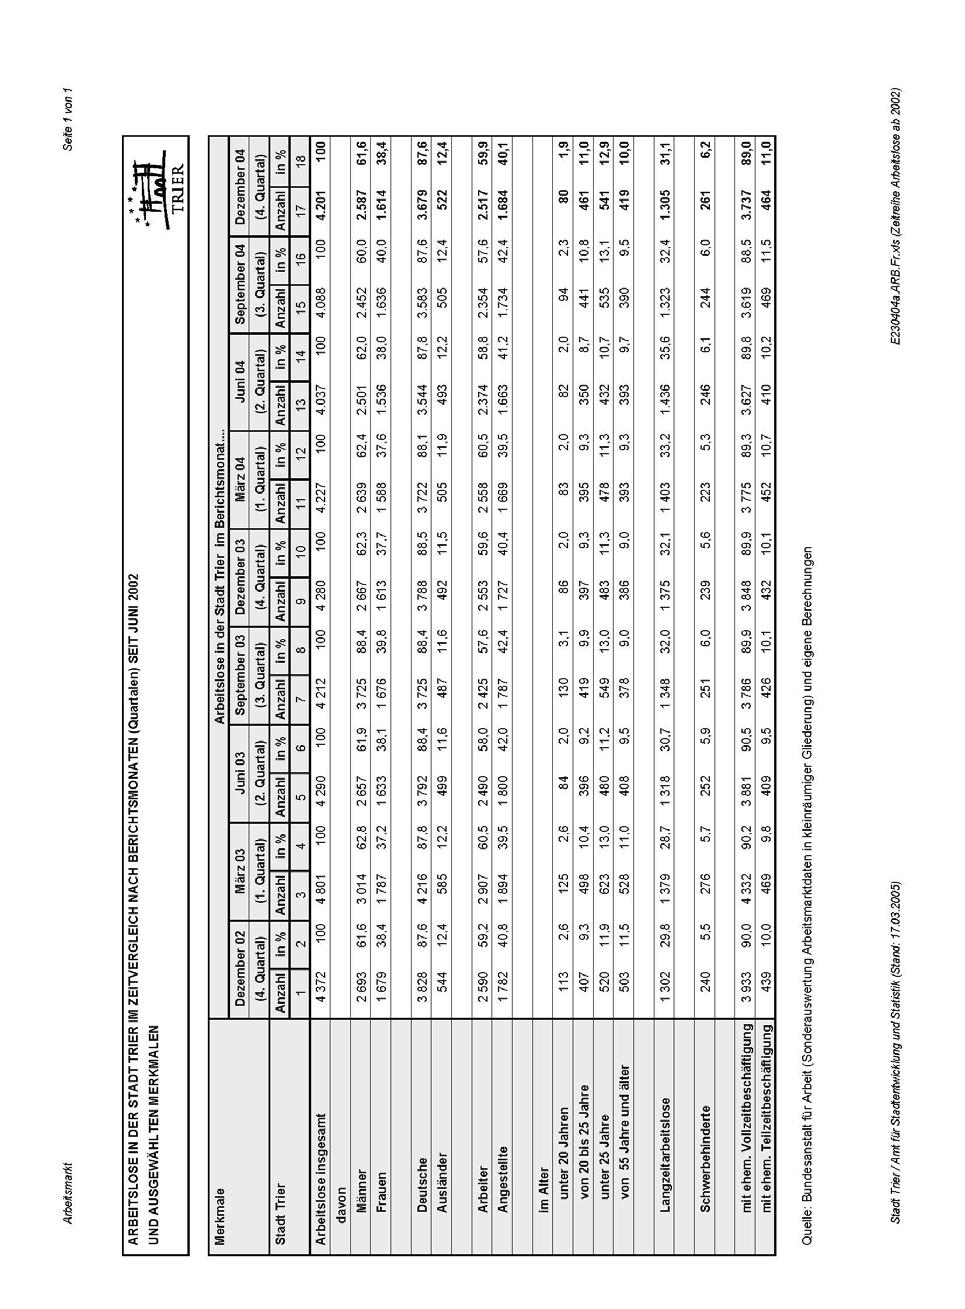 Arbeitslosenzahlen in der Stadt Trier im zweiten Halbjahr 2004 Seite 31 von 38 Tabelle 7 Arbeitslose in